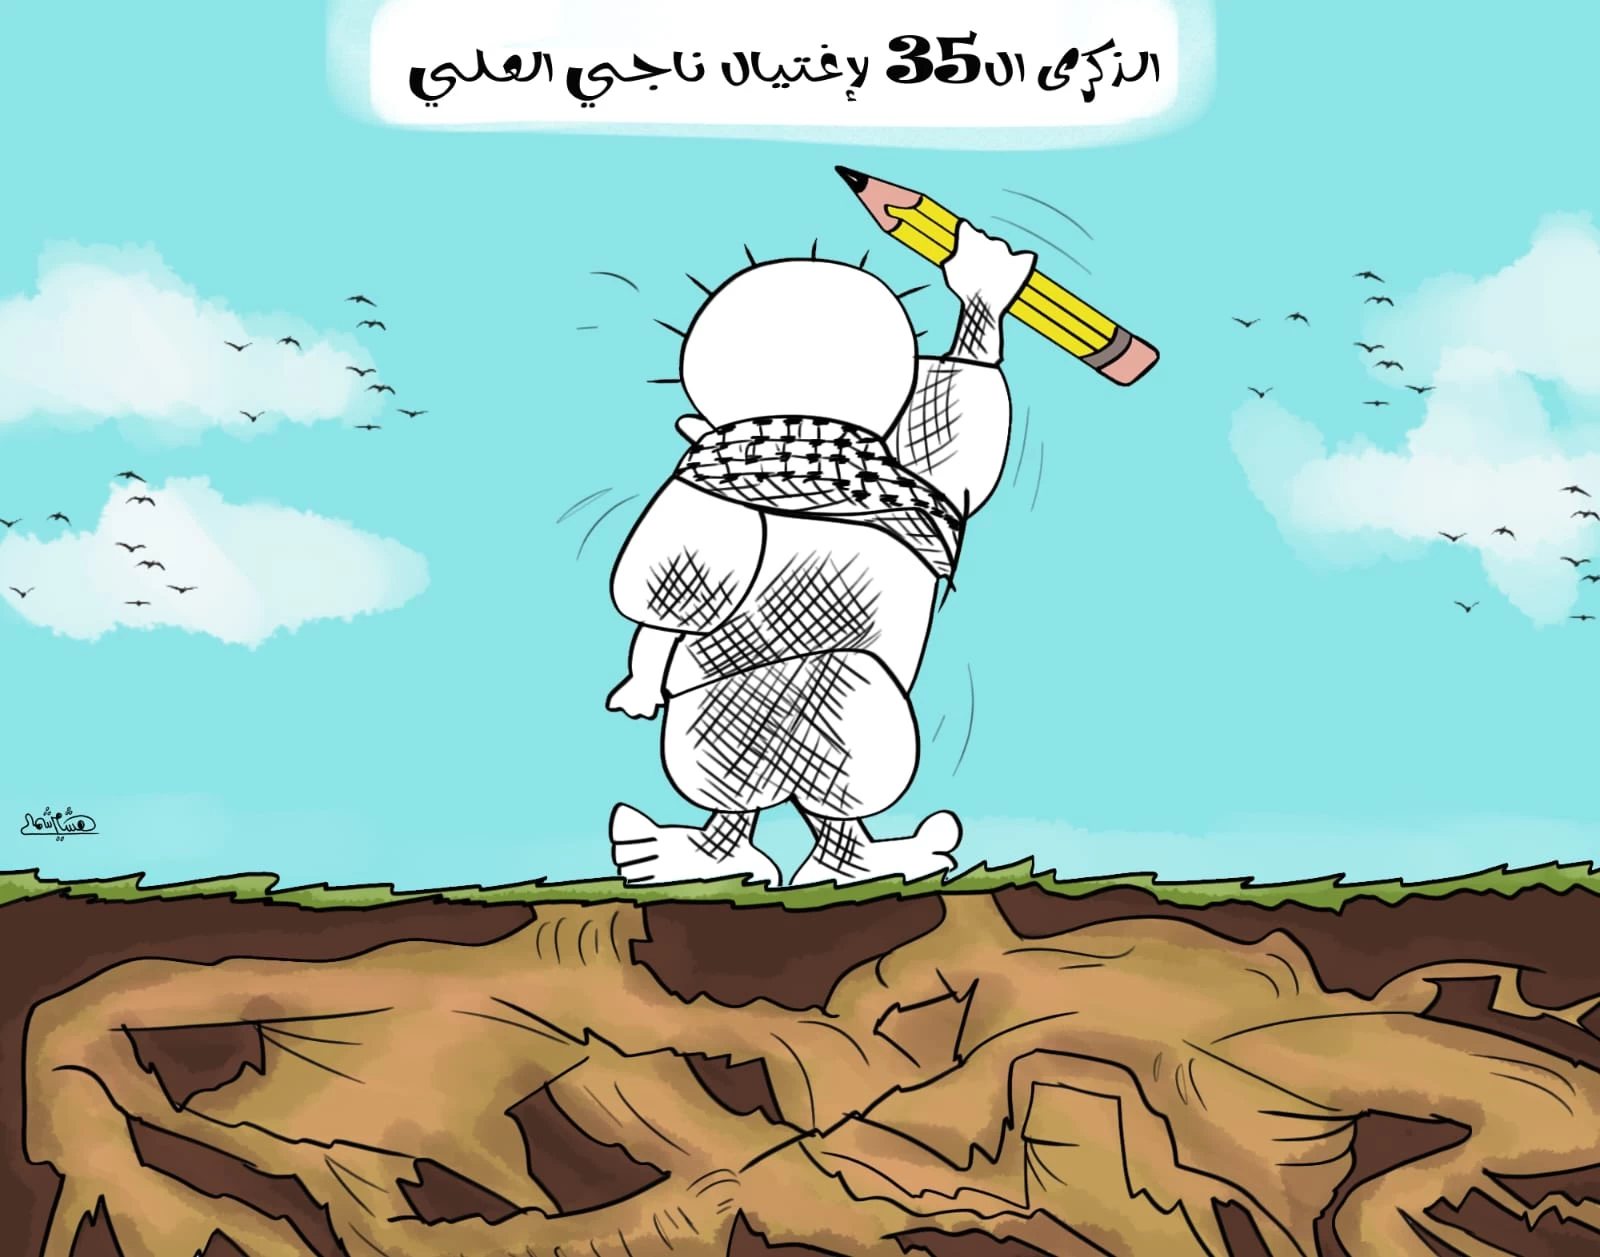 لوحة كاريكاتير للفنان الفلسطيني هشام شمالي ( خاص السوري اليوم)